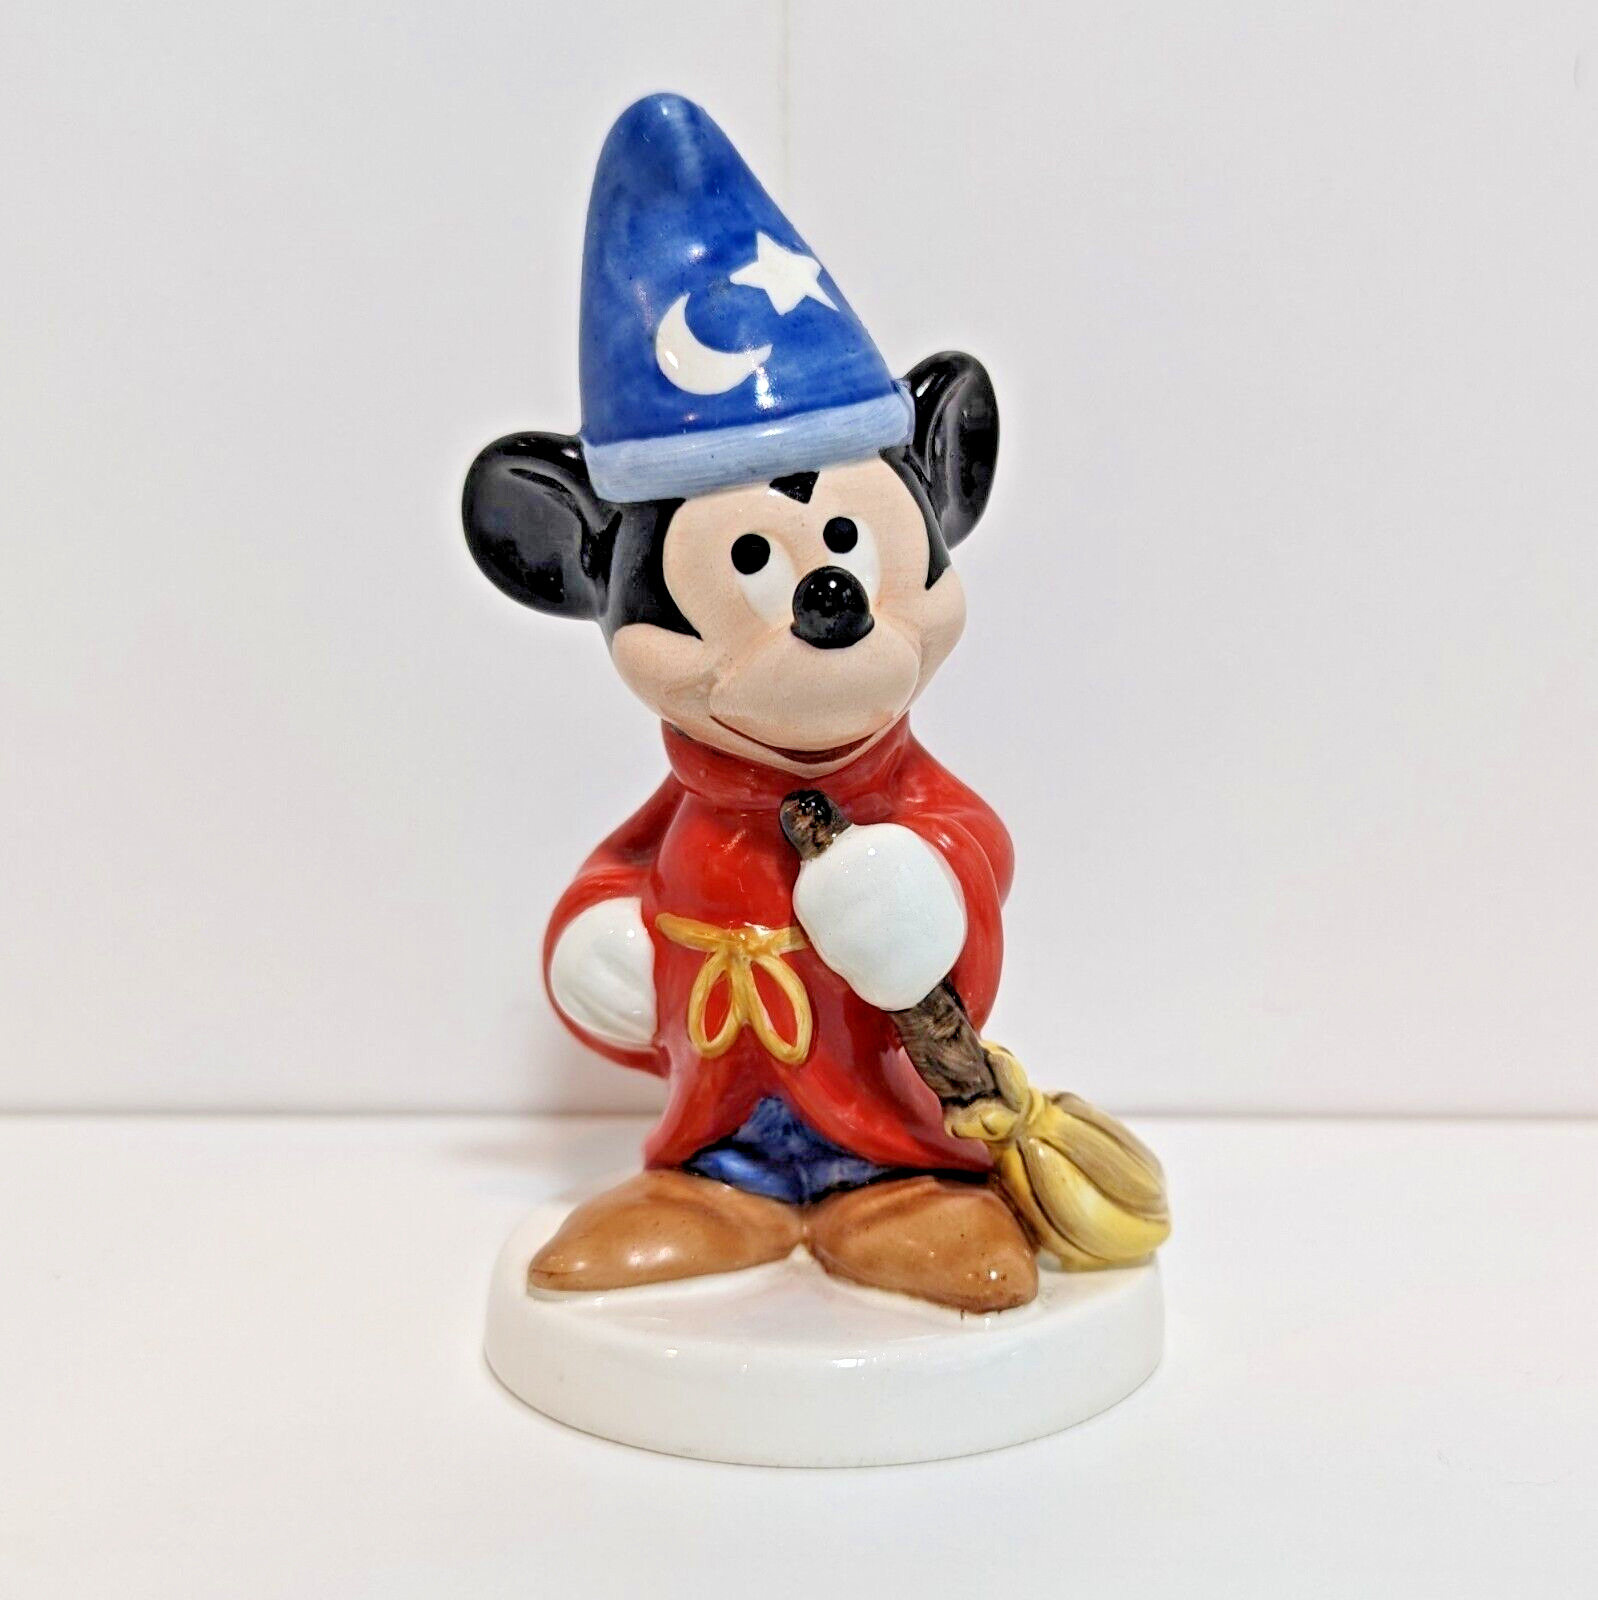 Goebel Disney Fantasia Sorcerer Mickey Mouse with Broom Porcelain Figurine 5”